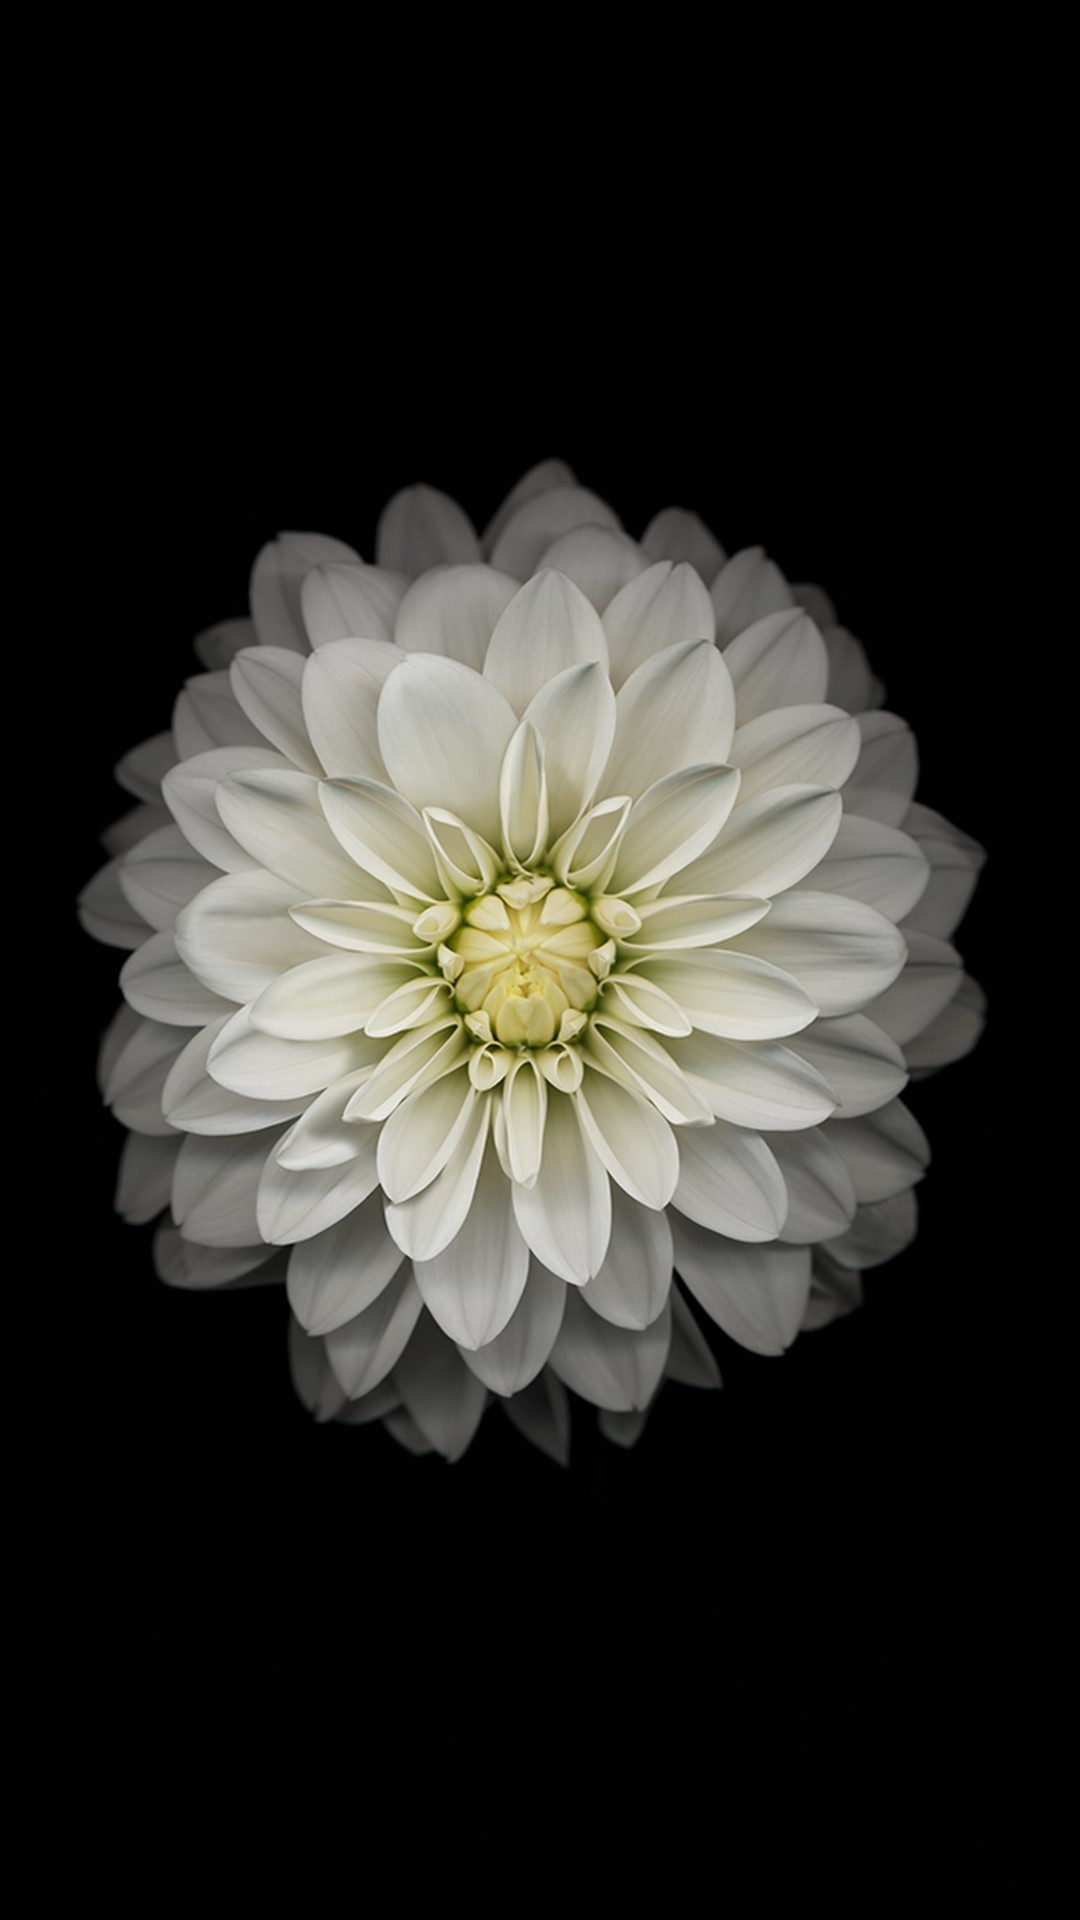 White Flower Wallpaper For Phone 1080x1920